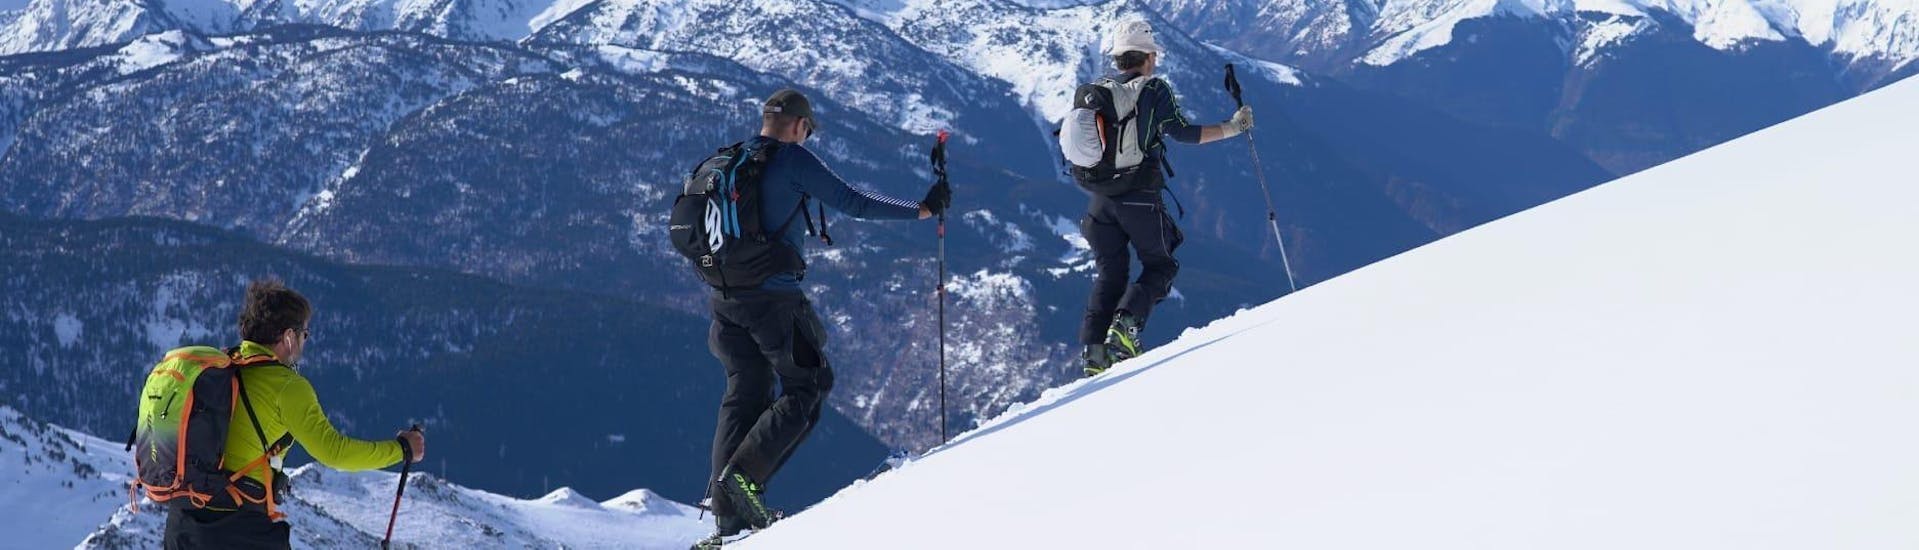 Scialpinismo privato a partire da 4 anni per tutti i livelli.